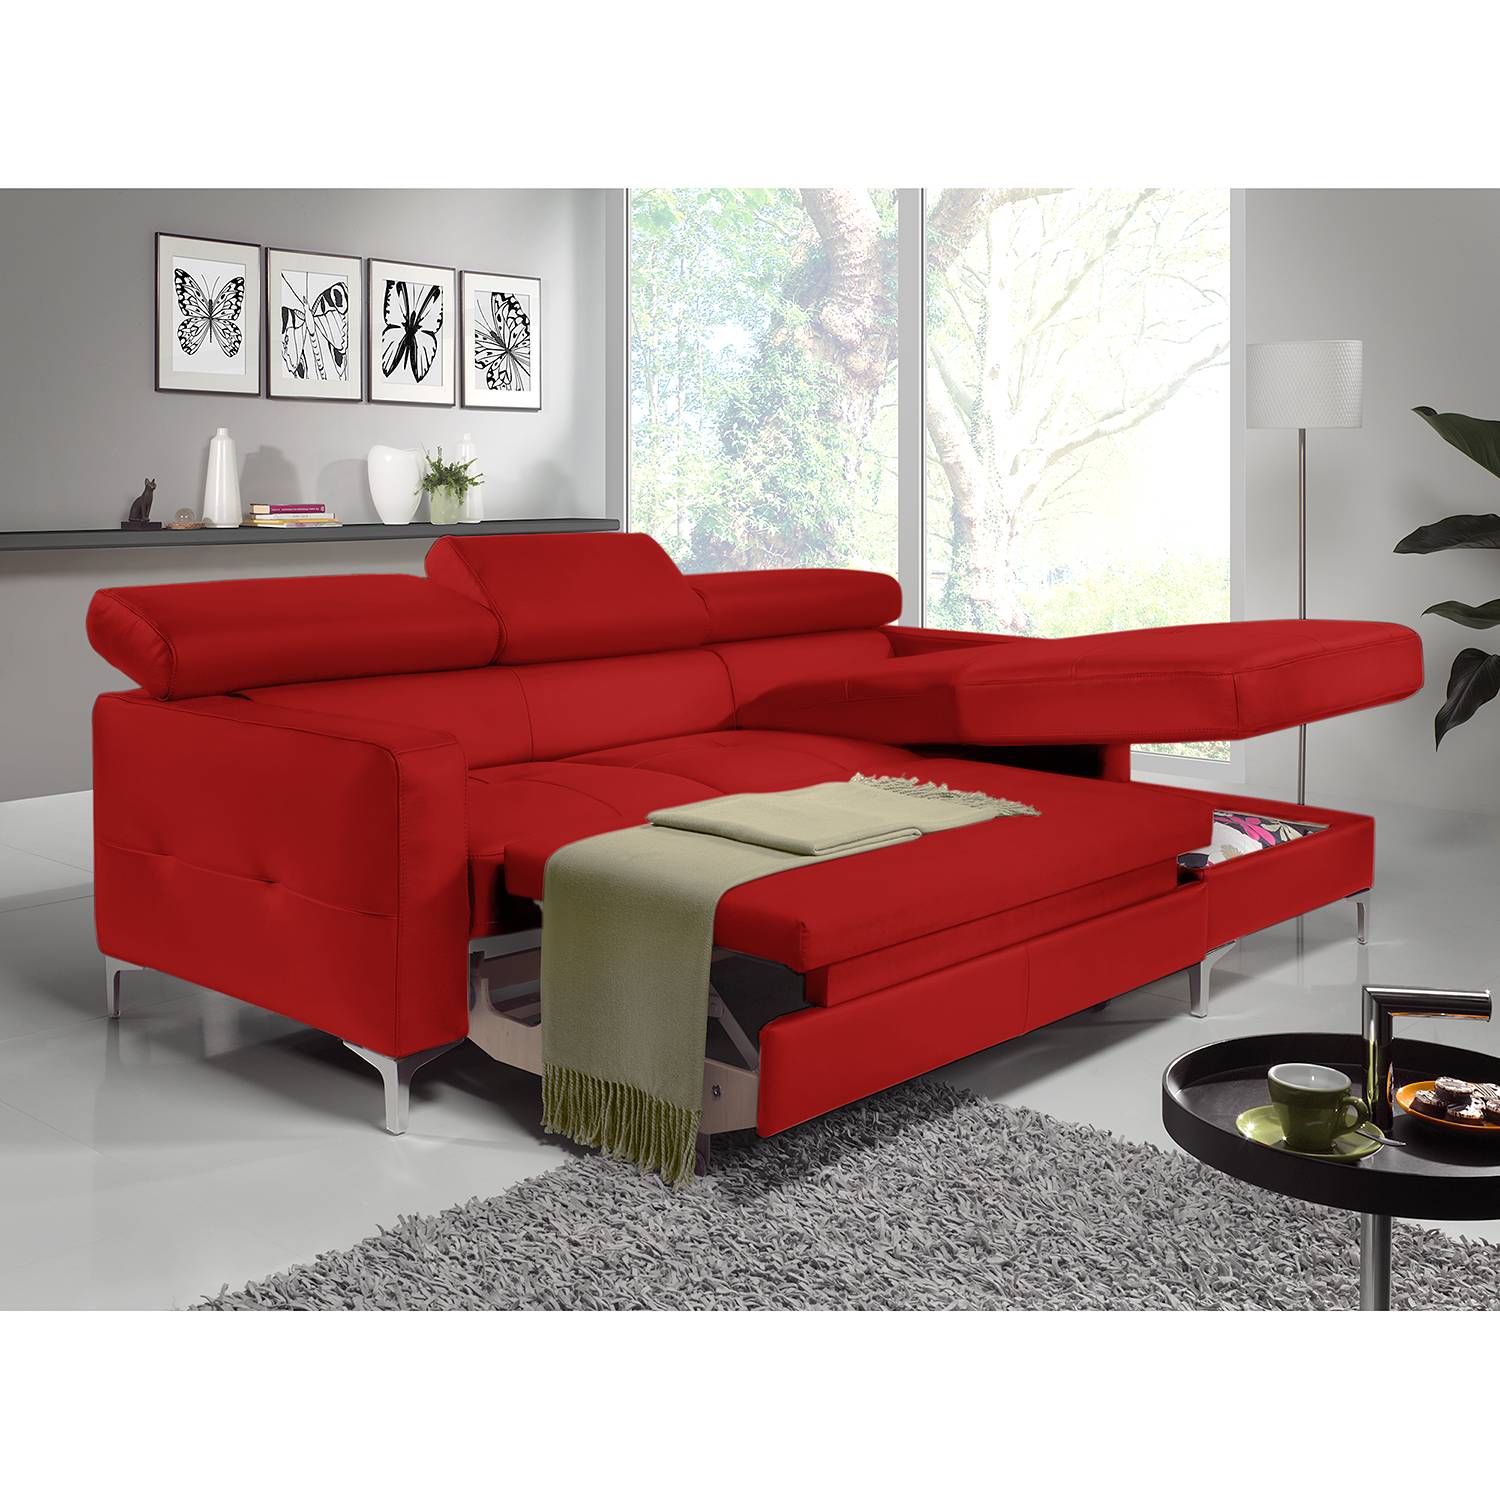 home24 Cotta Ecksofa Eduardo 2-Sitzer Rot Kunstleder 226x74x169 cm (BxHxT) mit Schlaffunktion/Bettkasten Modern